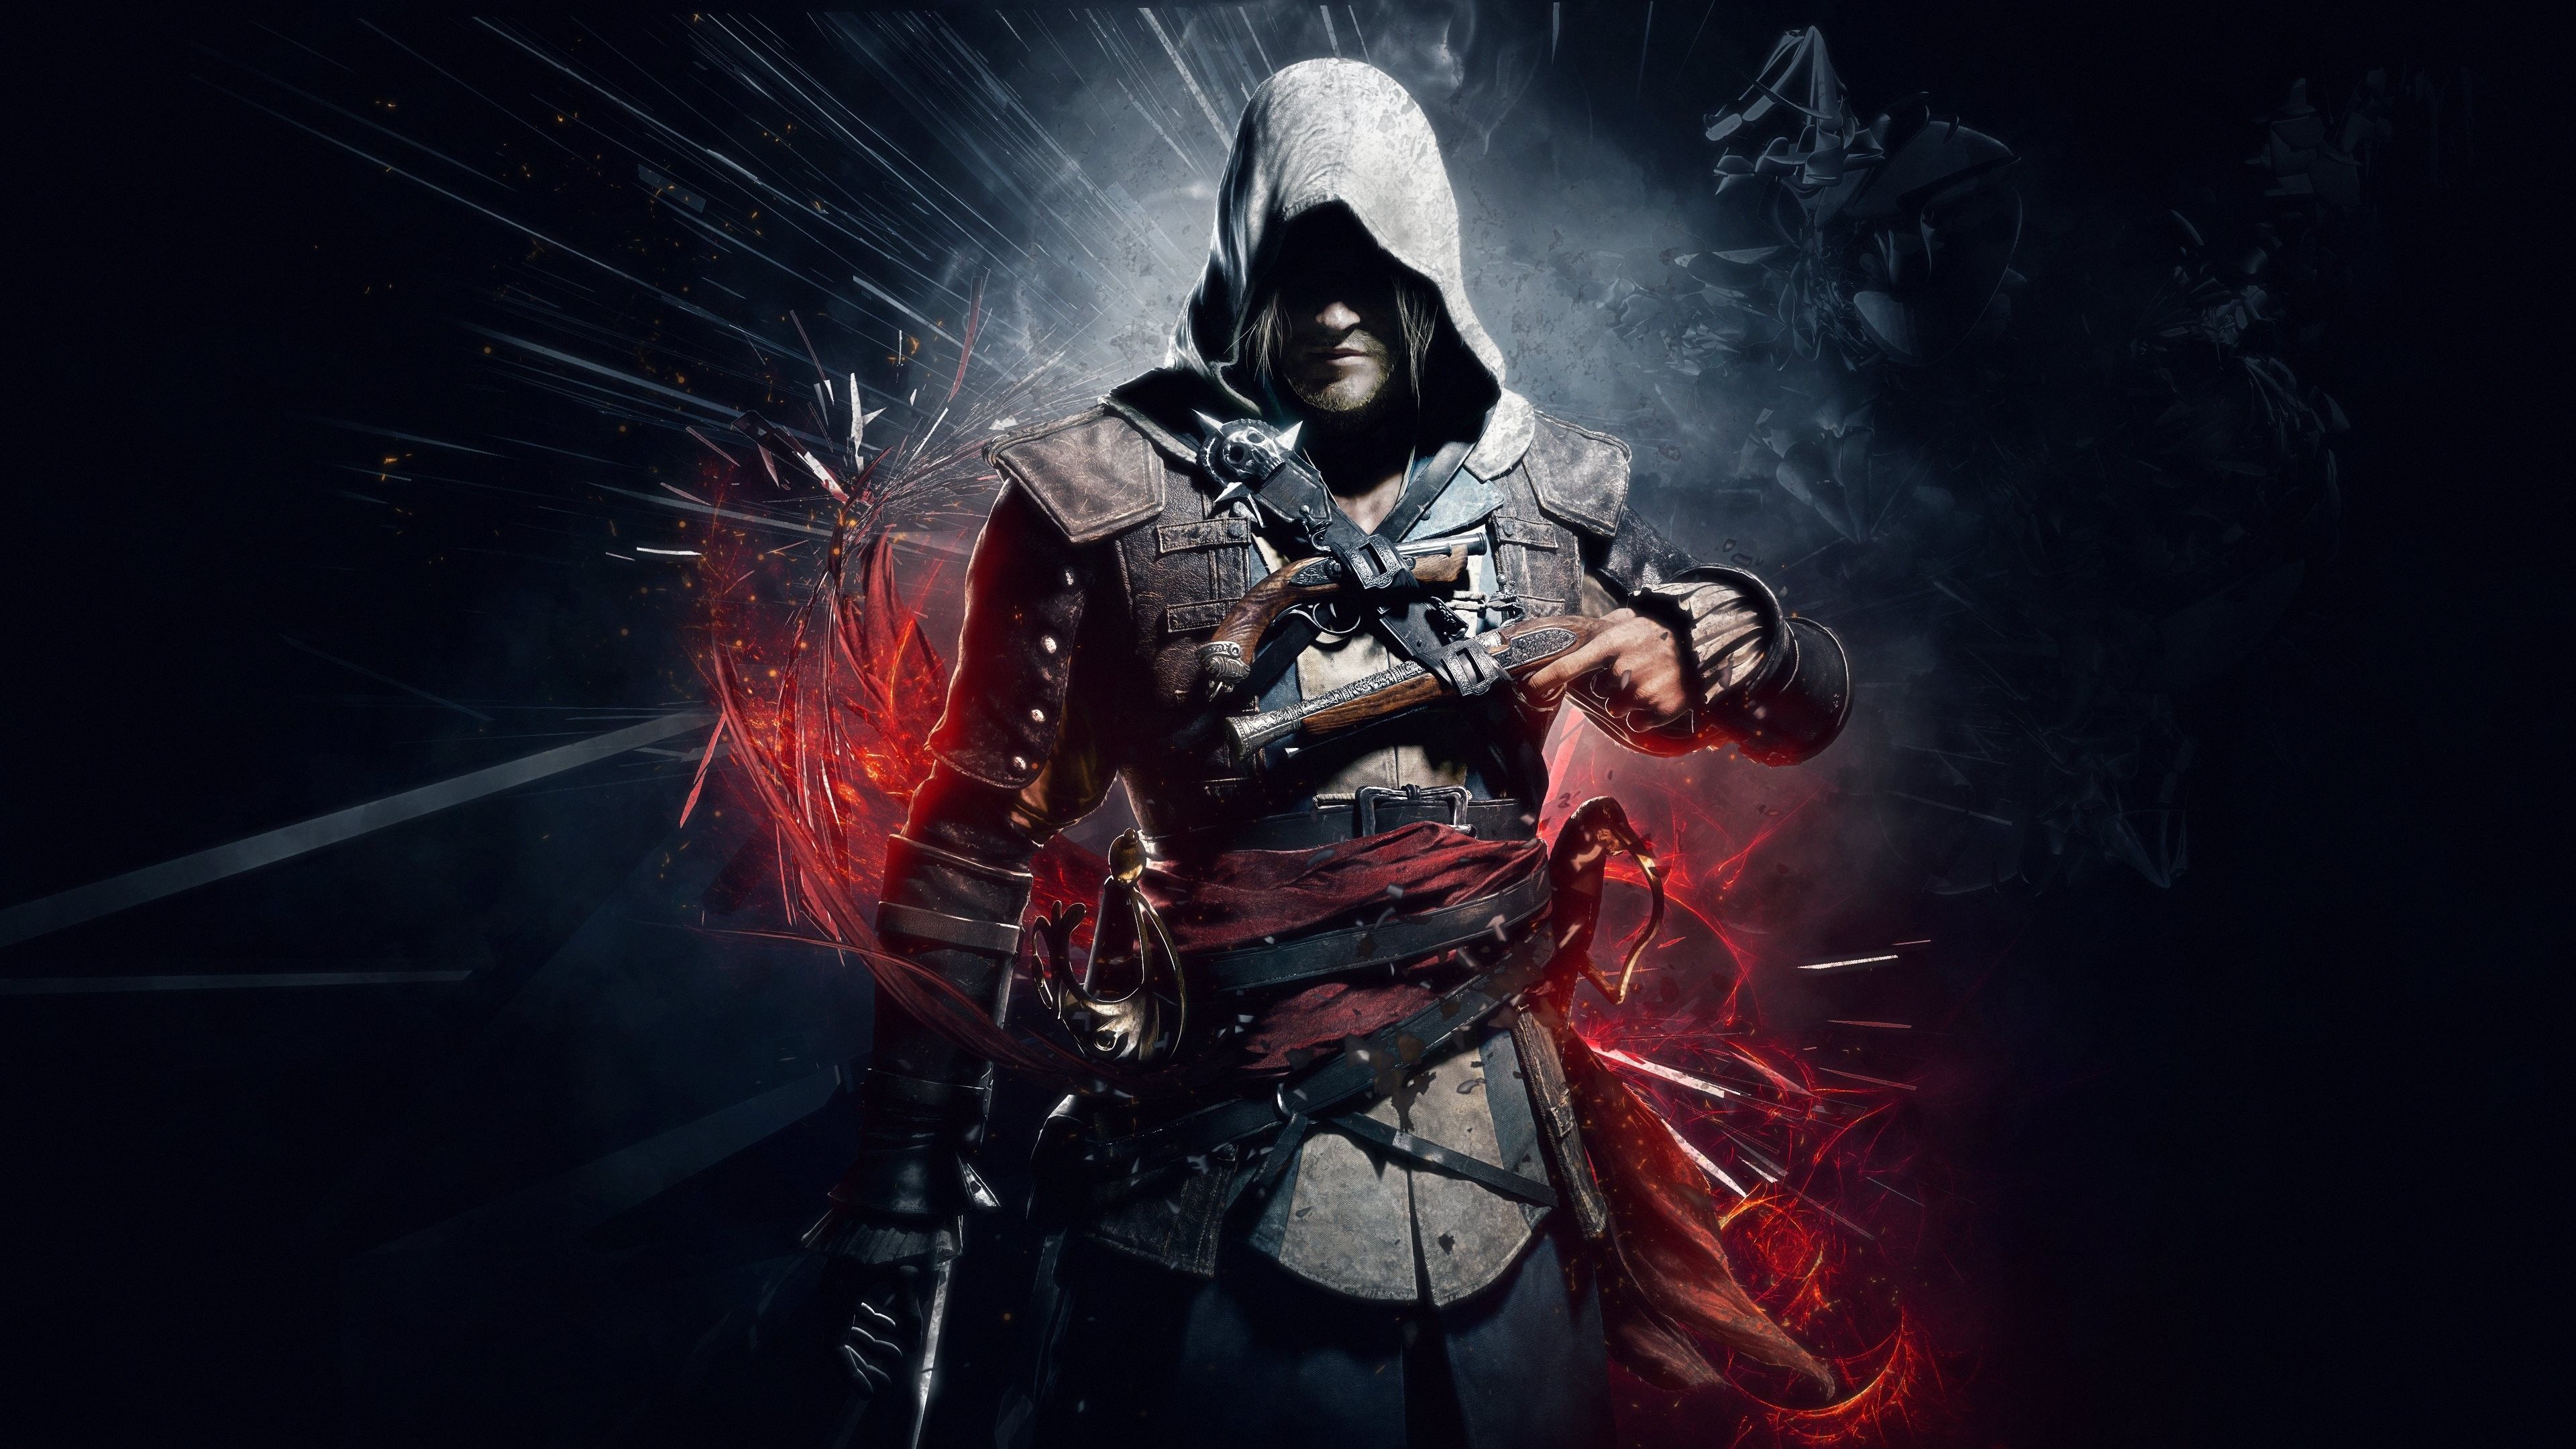 4k Gaming Wallpaper - Assassin's Creed Full Hd - 3840x2160 Wallpaper -  